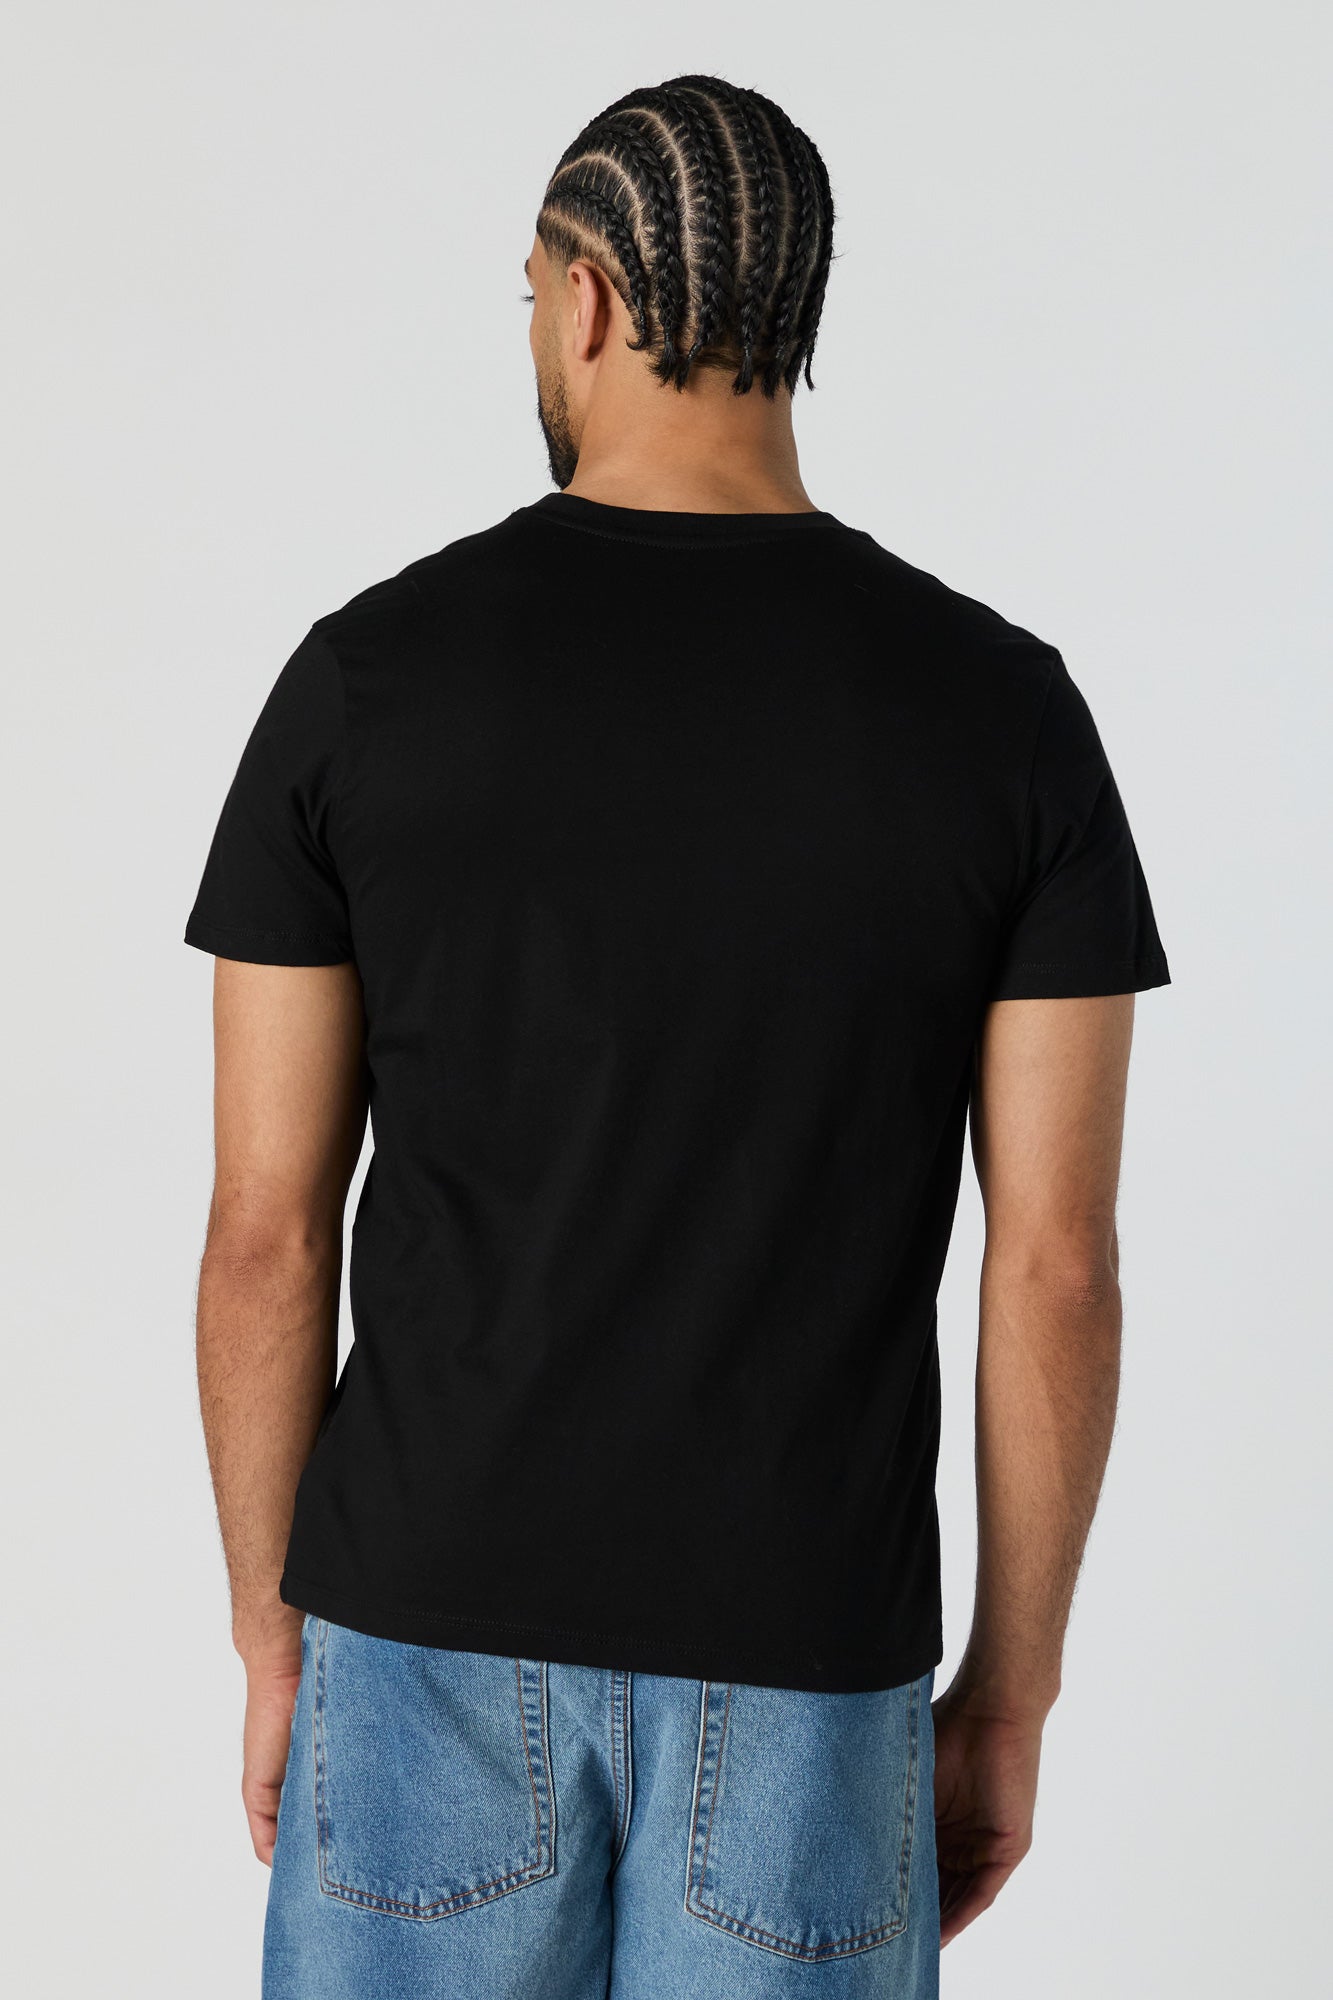 Lone Shark Graphic T-Shirt